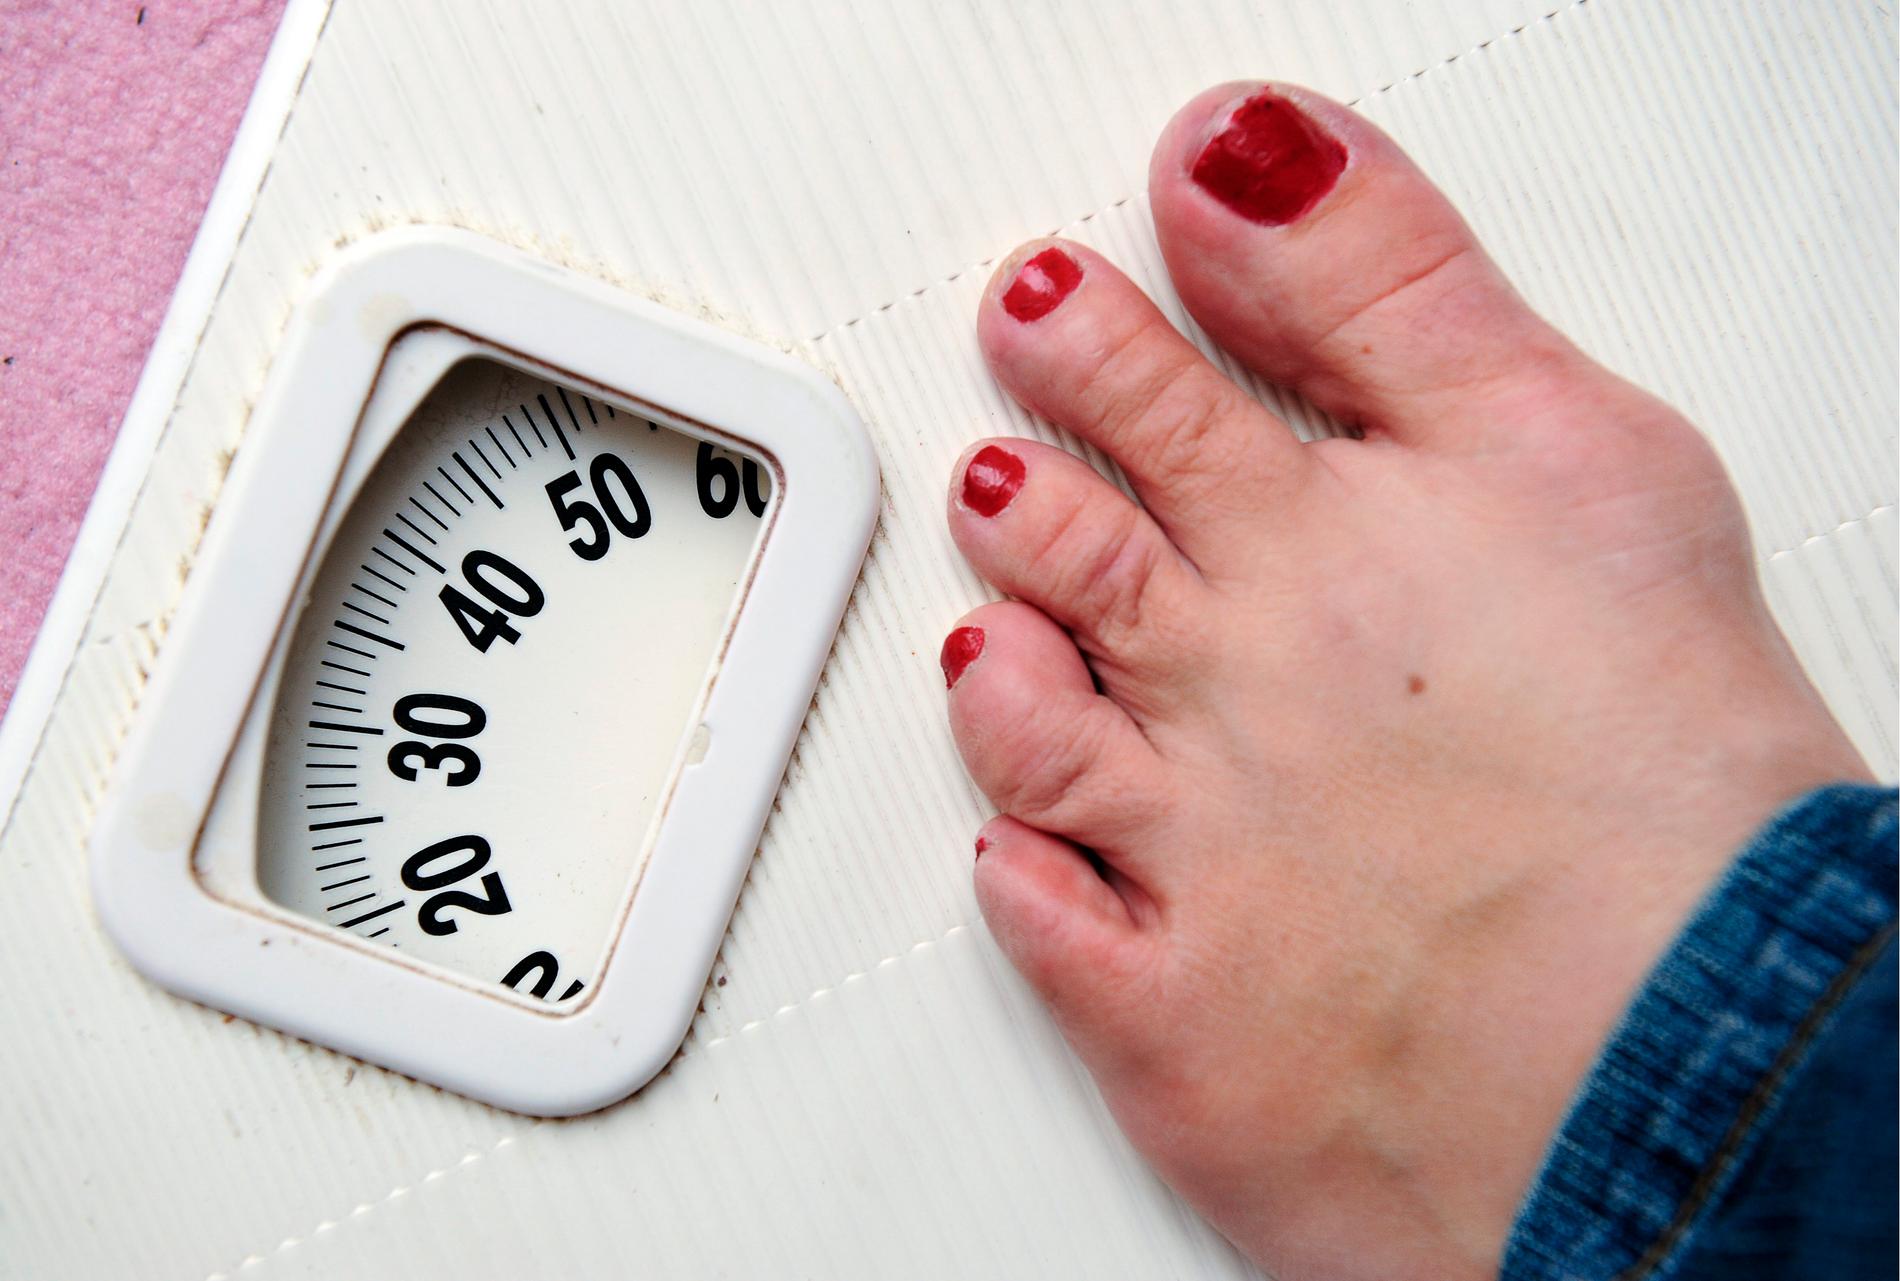 Ätstörningspatienter som väger mer får vänta längre på vård. Arkivbild.